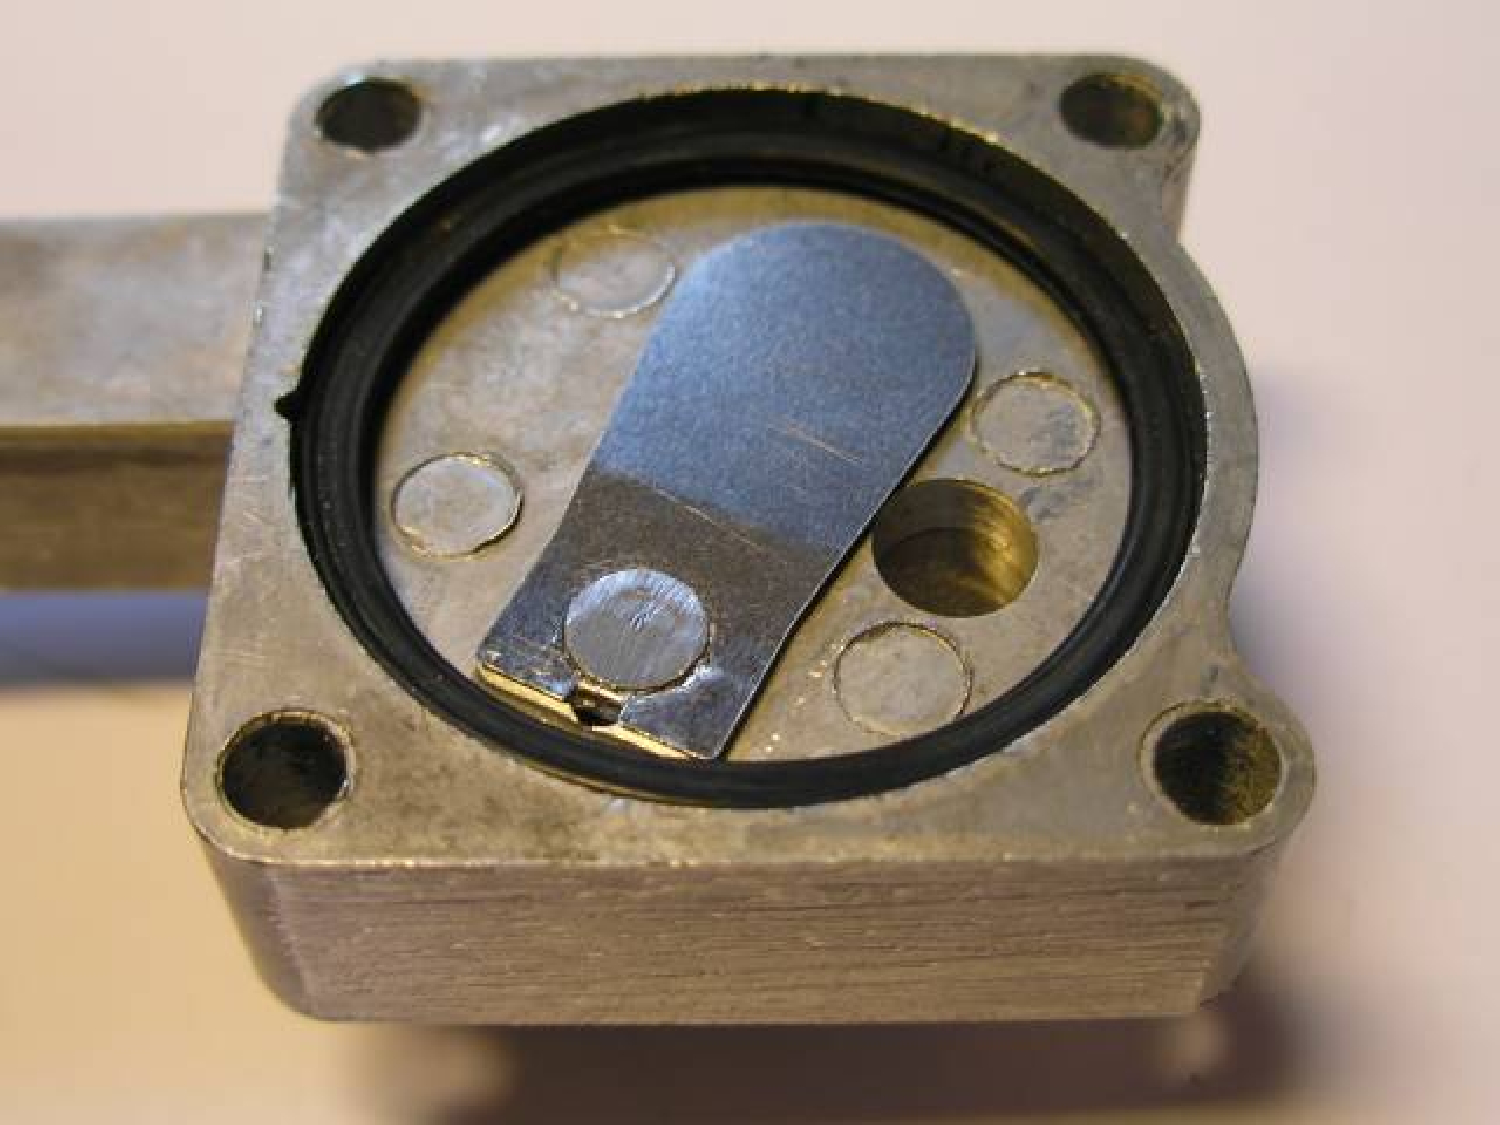 Intake valve